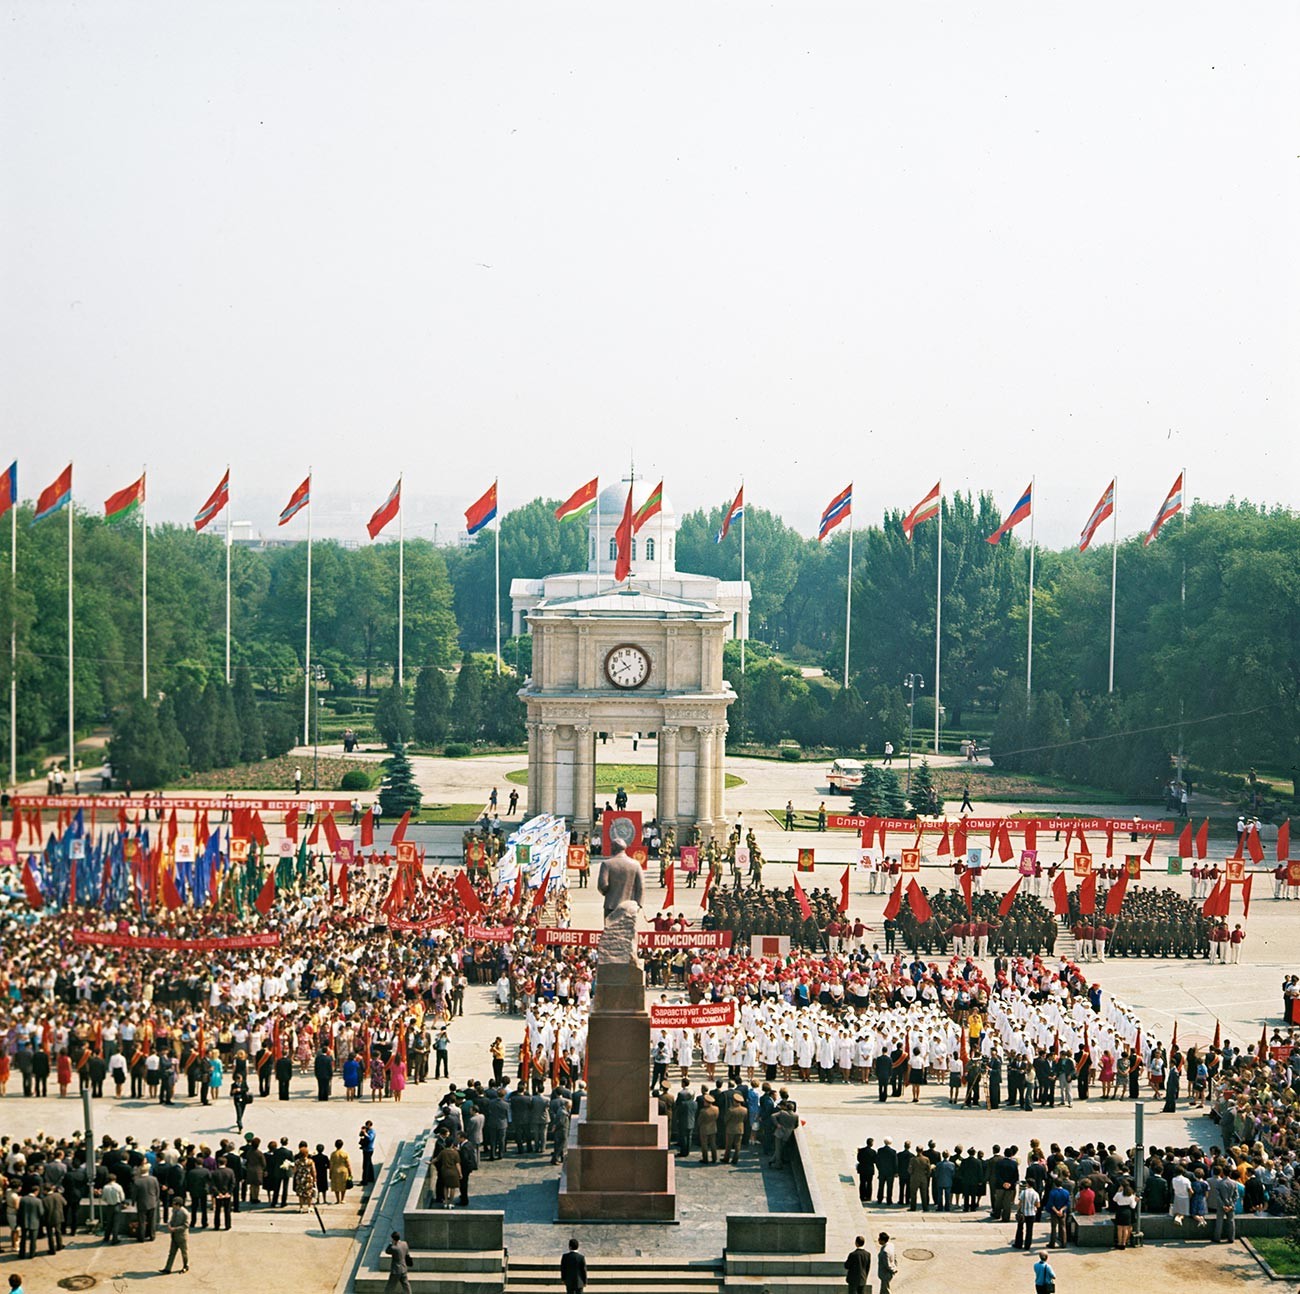 Siegesfeier auf dem Siegesplatz in Chișinău, 1976